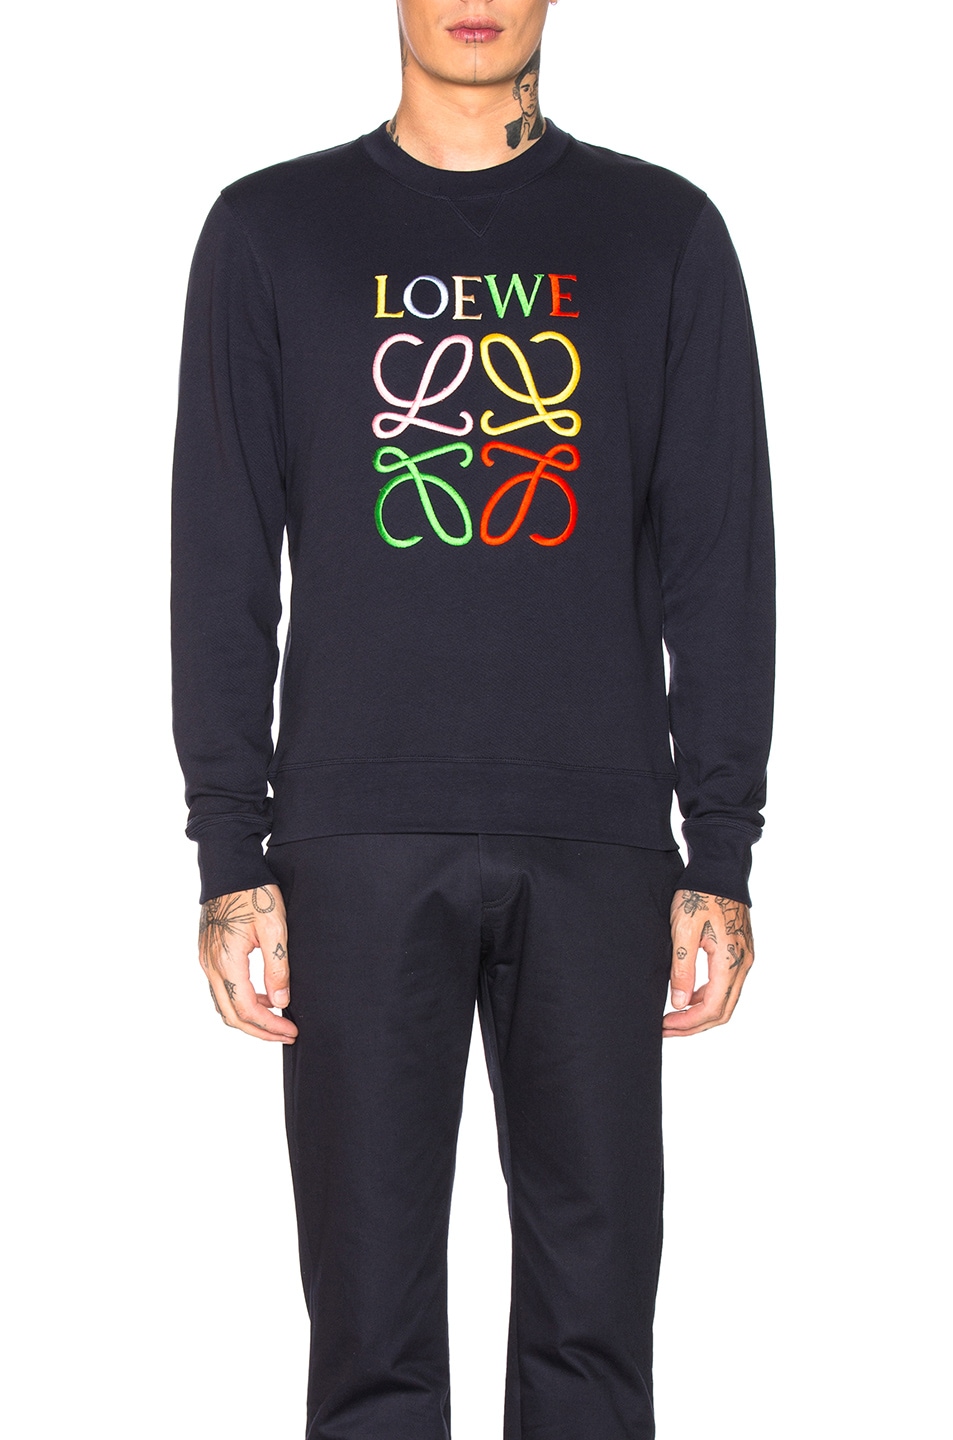 Image 1 of Loewe Anagram Sweatshirt in Navy Blue & Multi